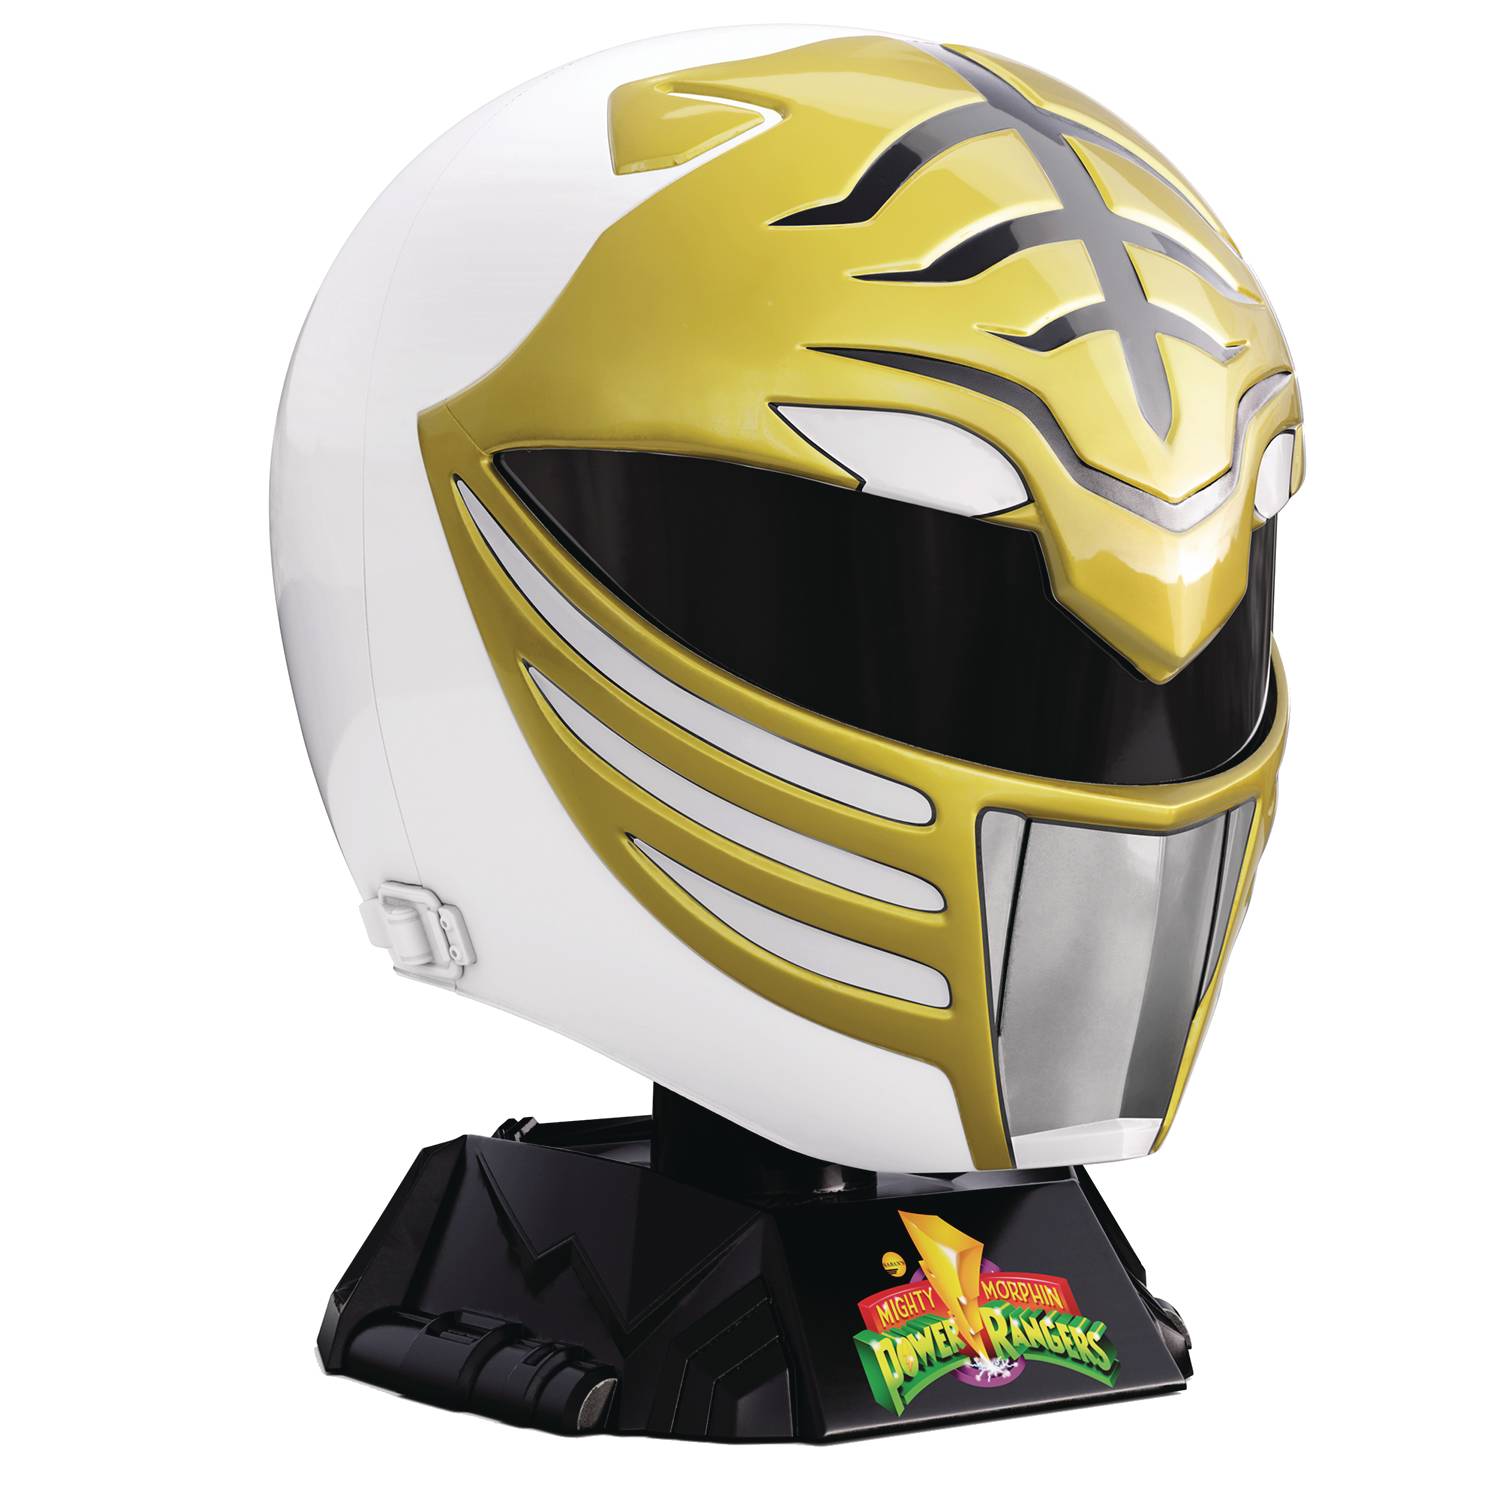 Power Rangers Lightning Collected Mighty Morphin Power Rangers White Ranger Helmet